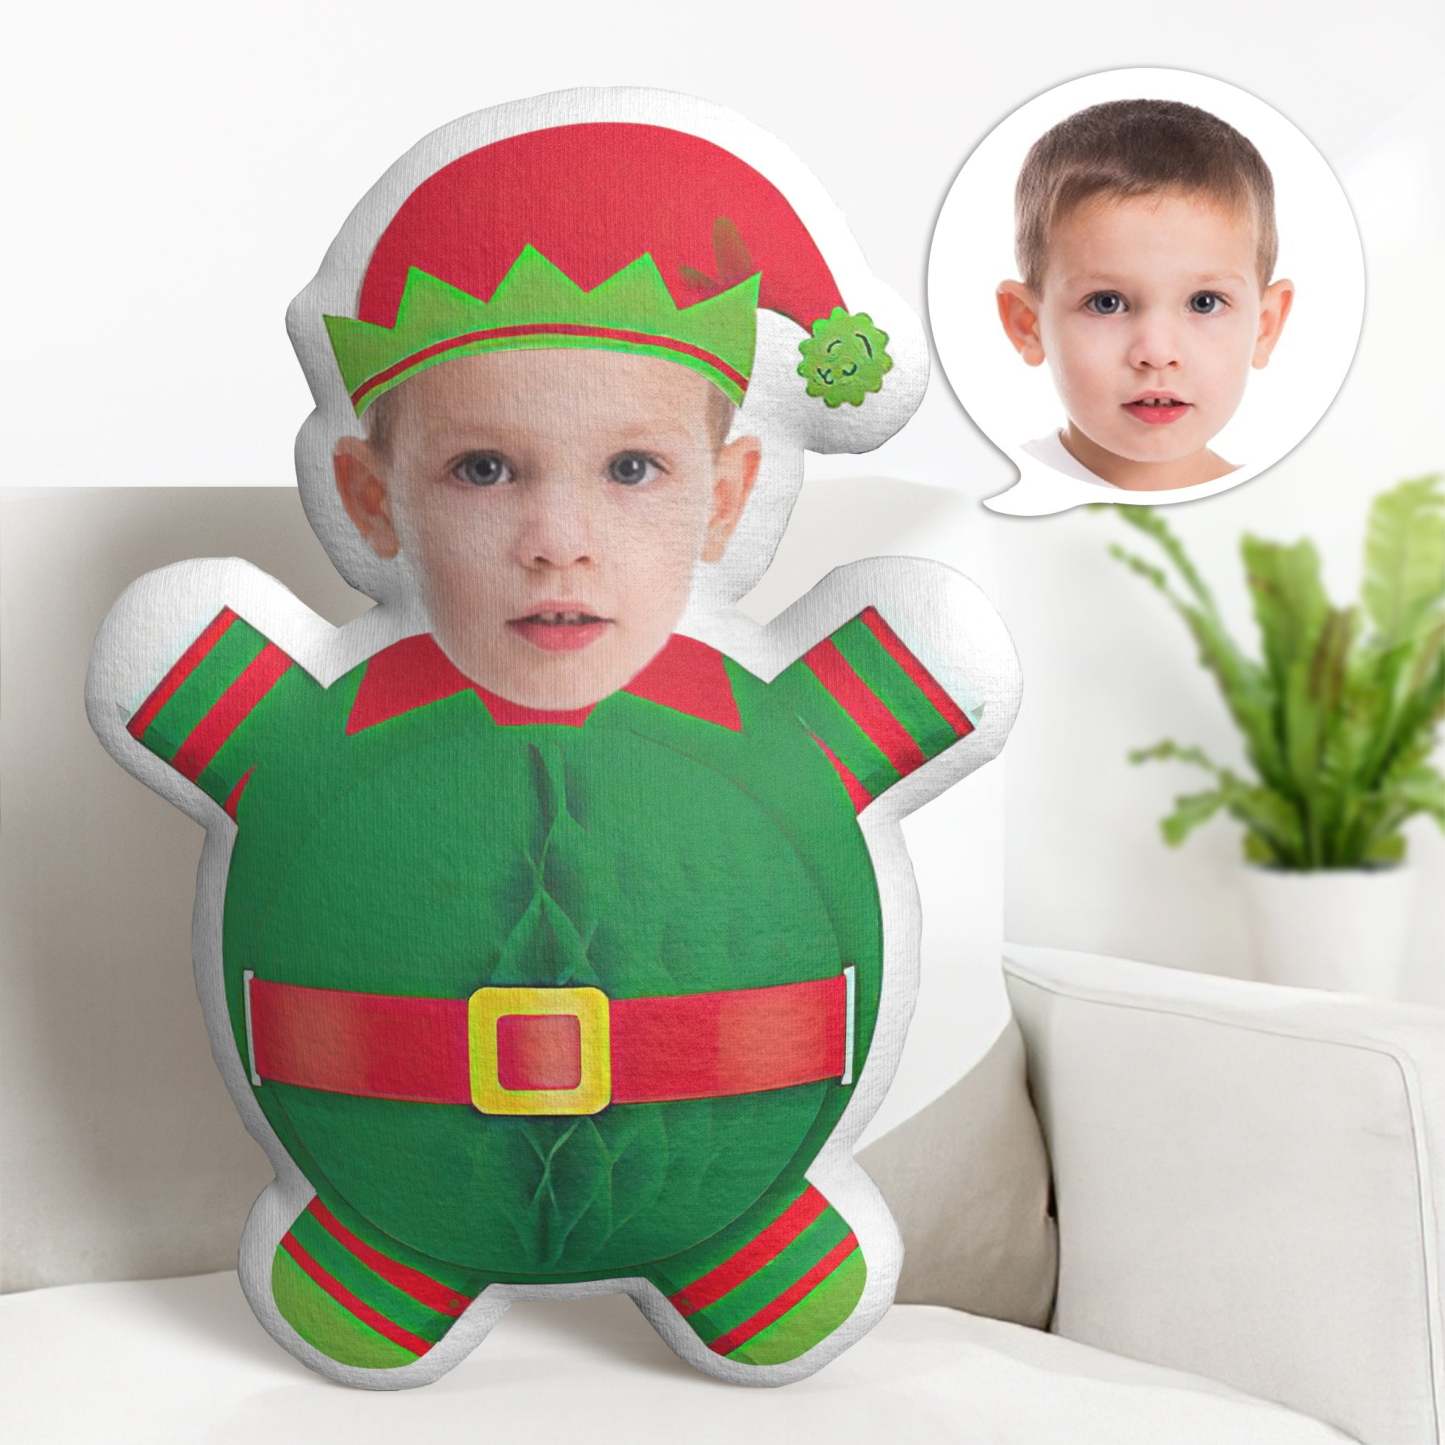 Weihnachtsgeschenke Kundenspezifisches Gesichtskissen Personalisierte Minime-kissengeschenke Weihnachten Grüne Papierblume - soufeelde